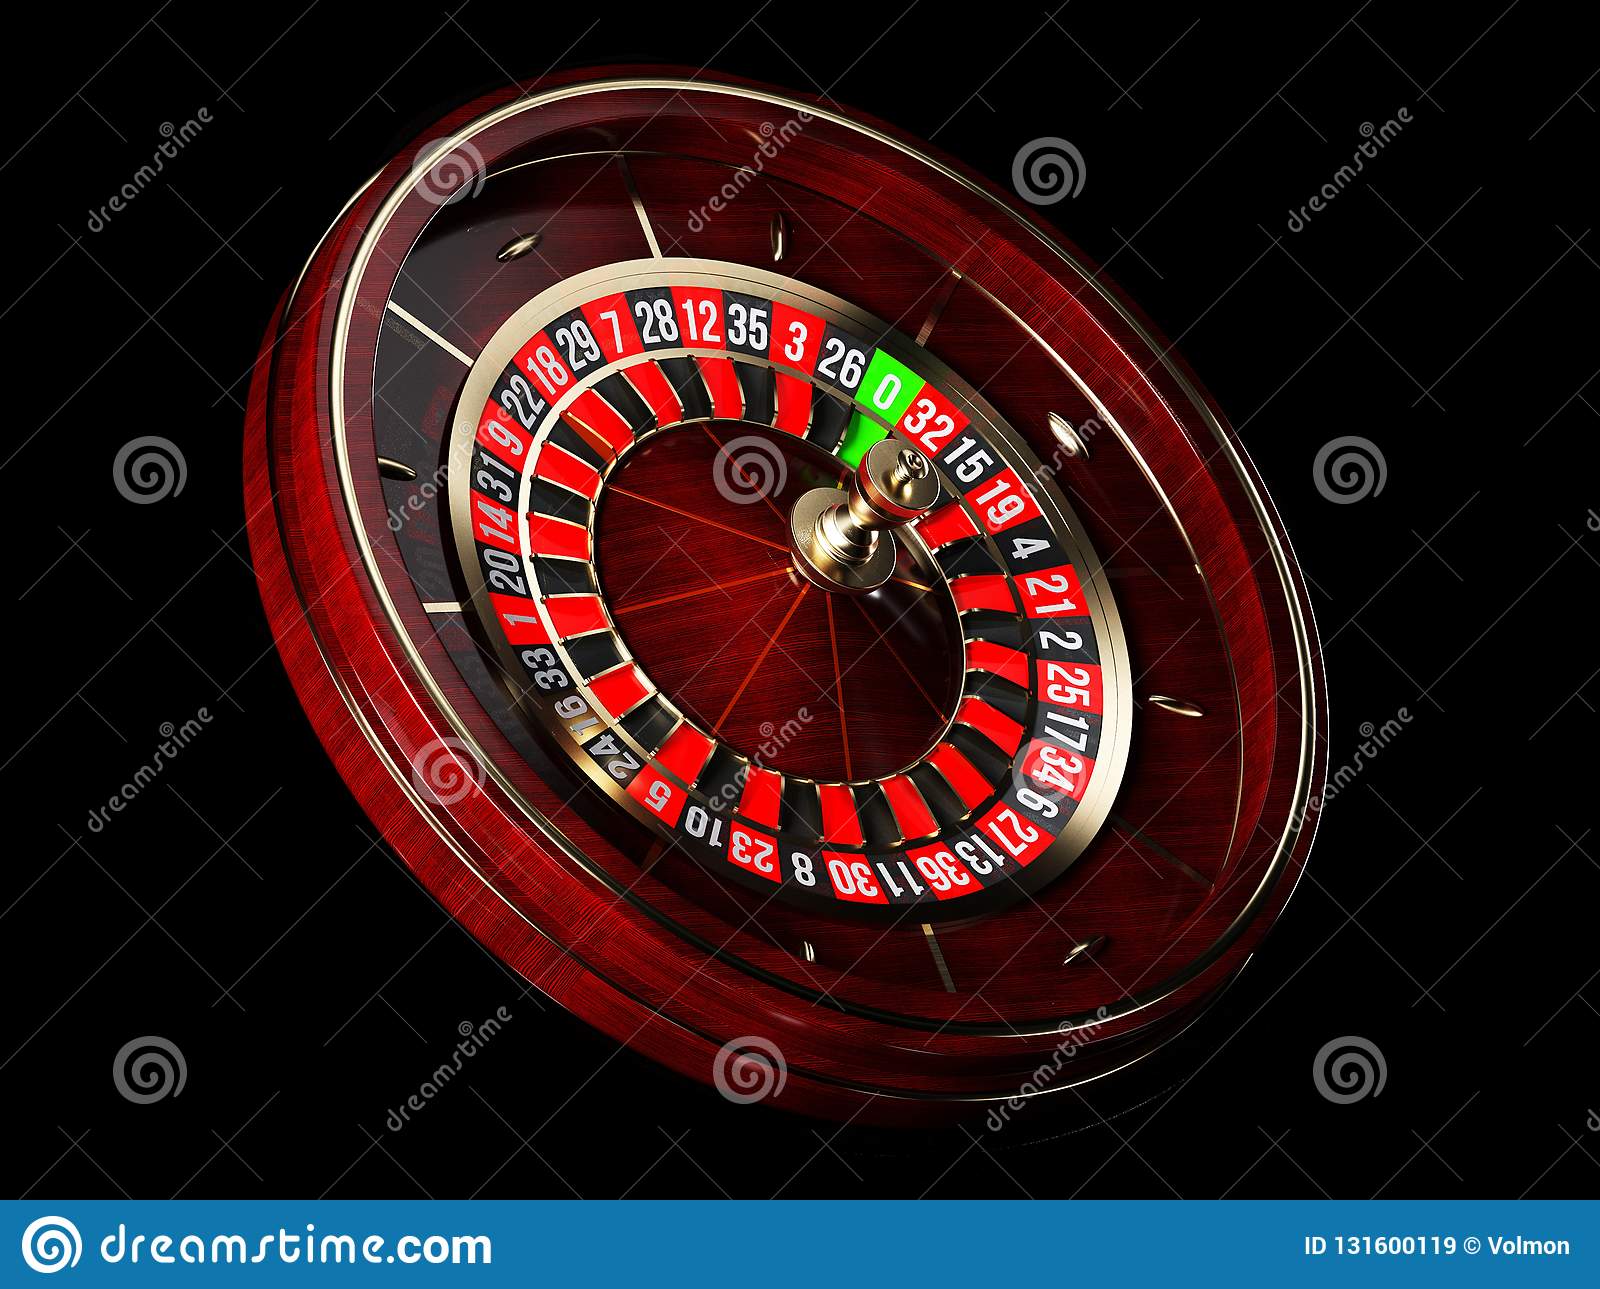 Politica de bônus 888 casino